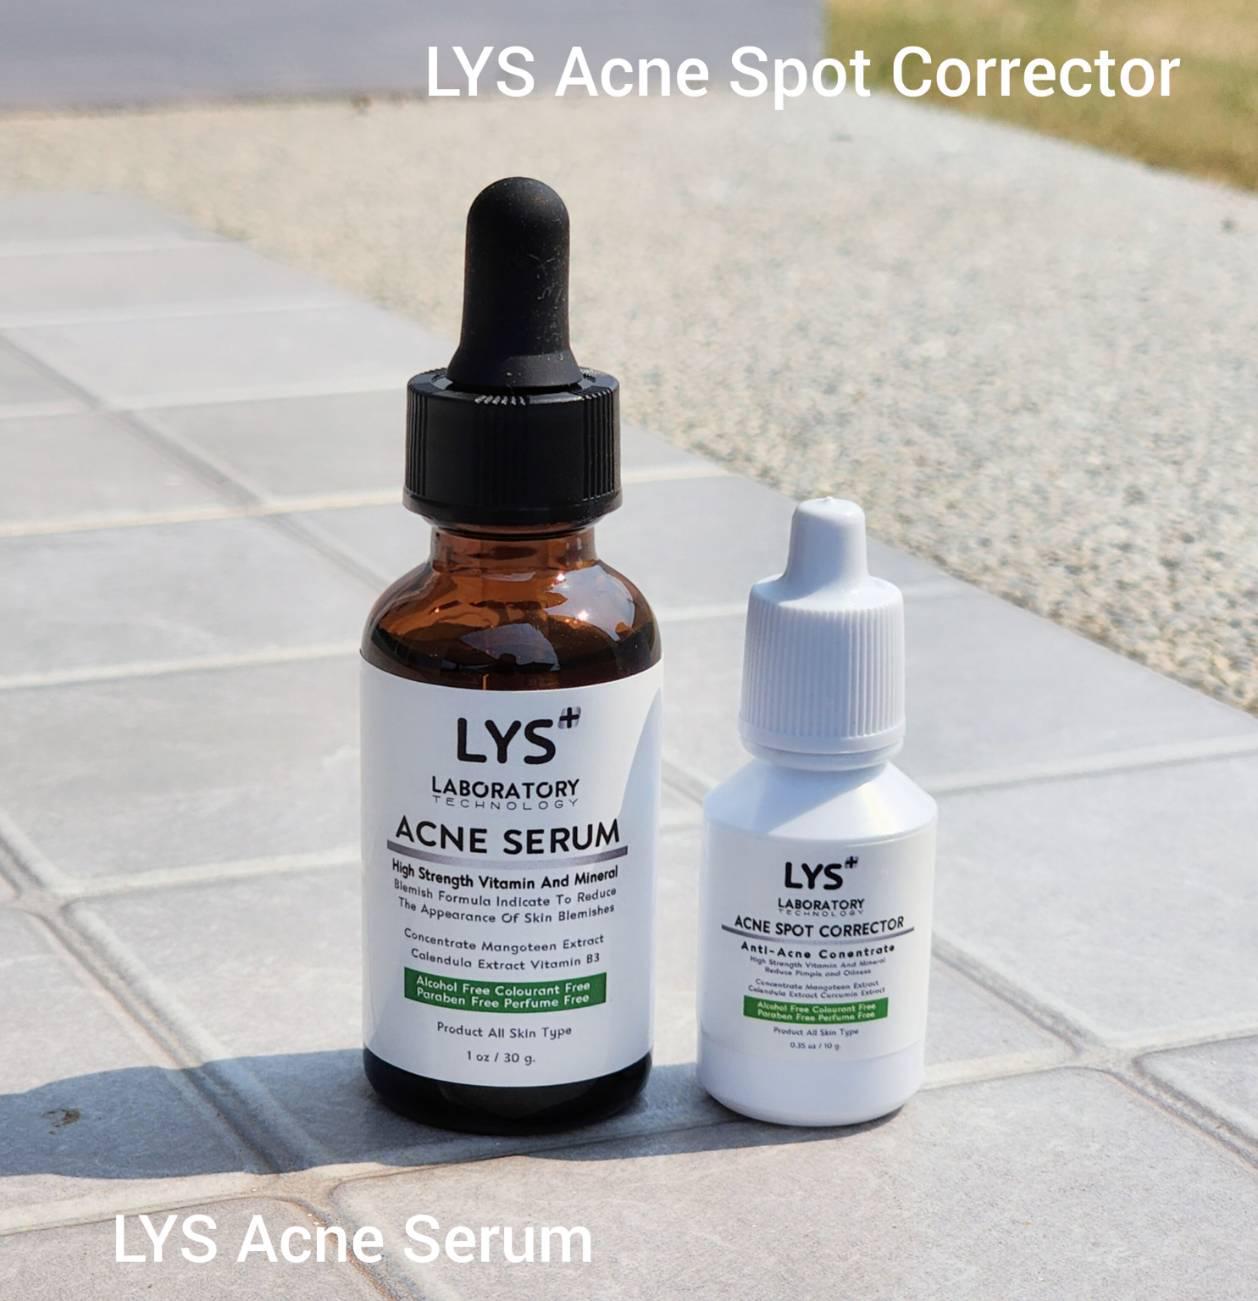 ภาพหน้าปก เซรั่มกู้ผิวแพ้สารสเตียรอยด์ แพ้ครีม หน้าติดสารสเตียรอยด์ ผิวแพ้ง่าย LYS Acne Serum และ LYS Acne Spot Corrector แบรนด์ lysofficialstore  ได้รับรางวัลส ที่:1